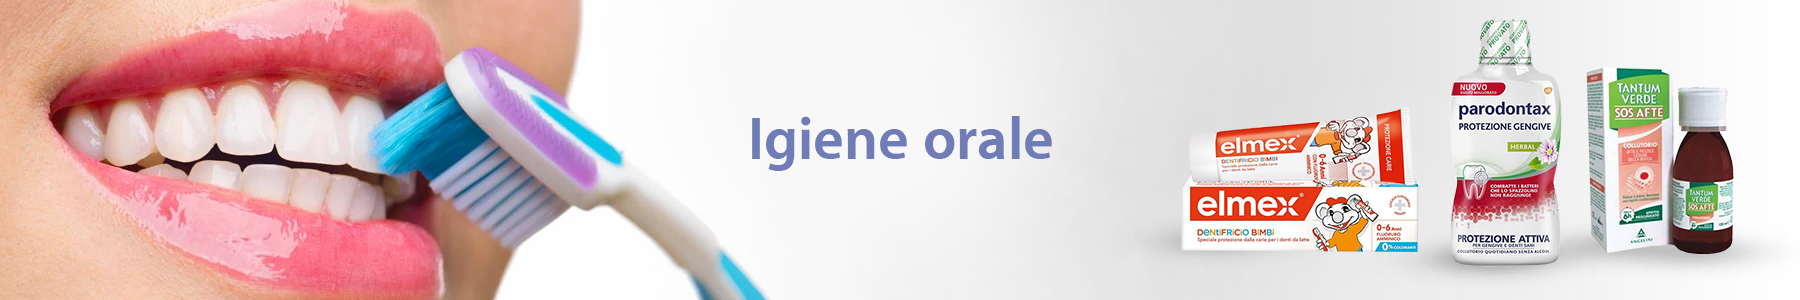 Igiene Orale